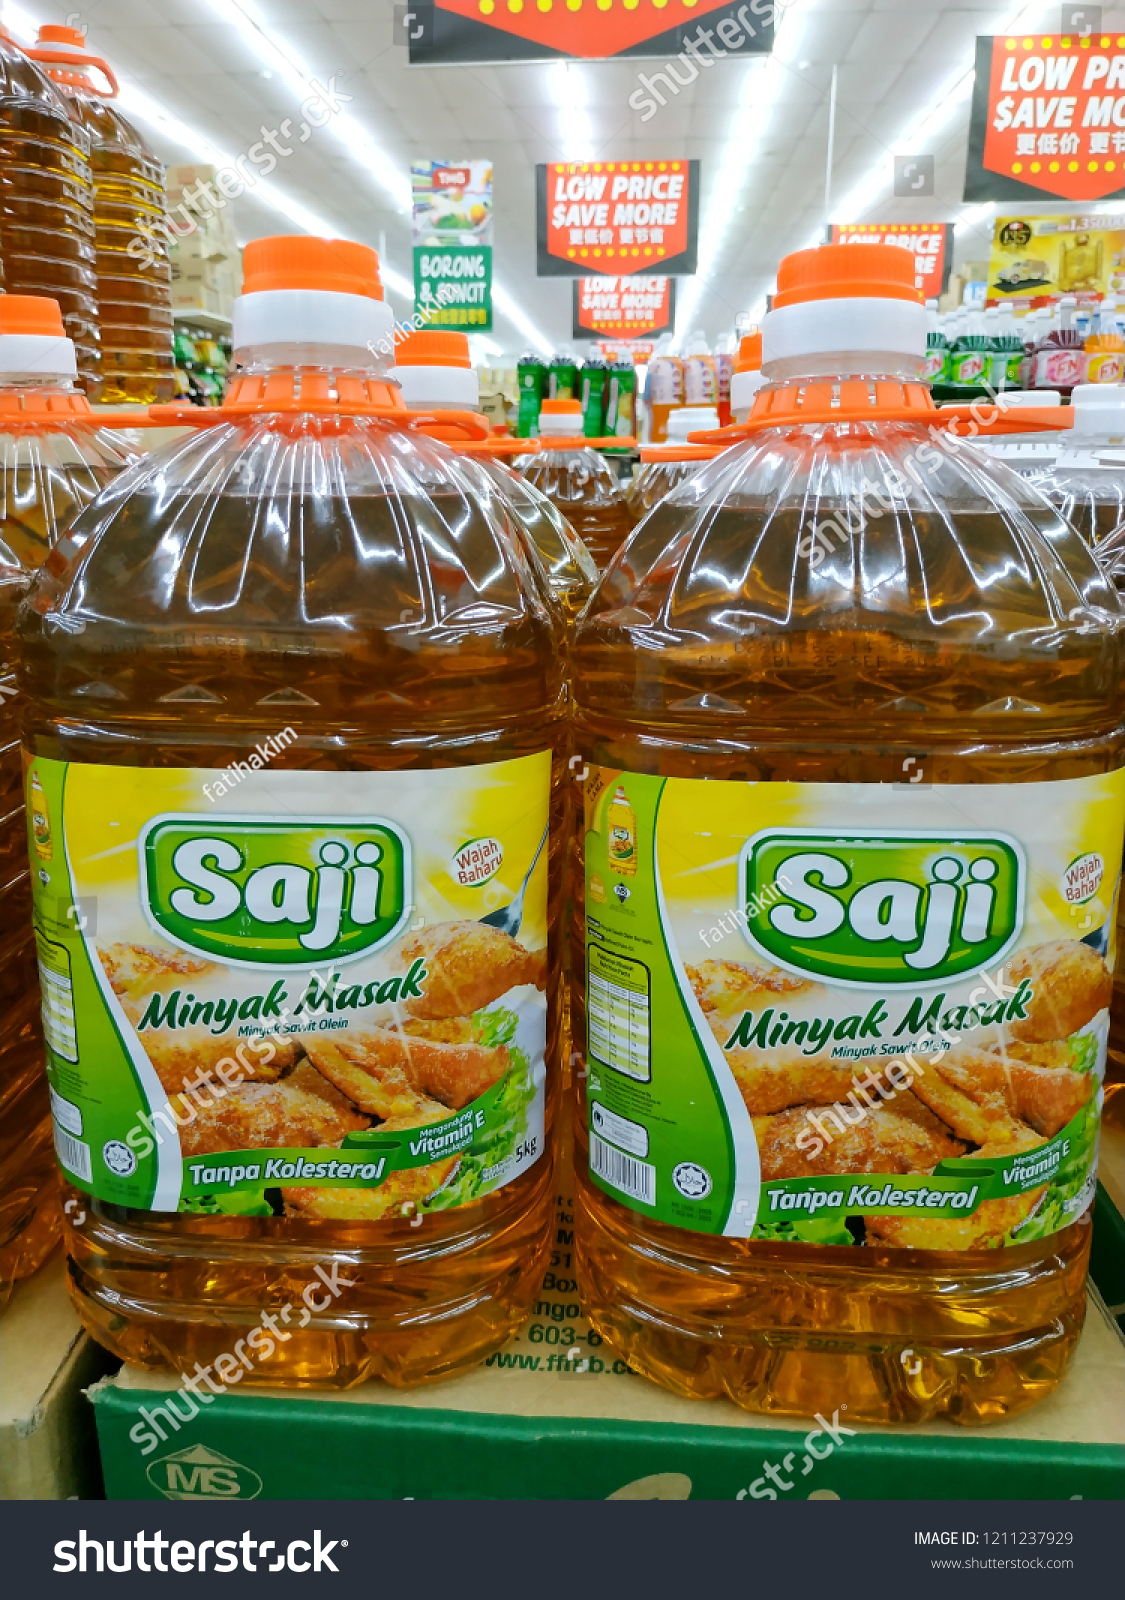 Saji cooking oil